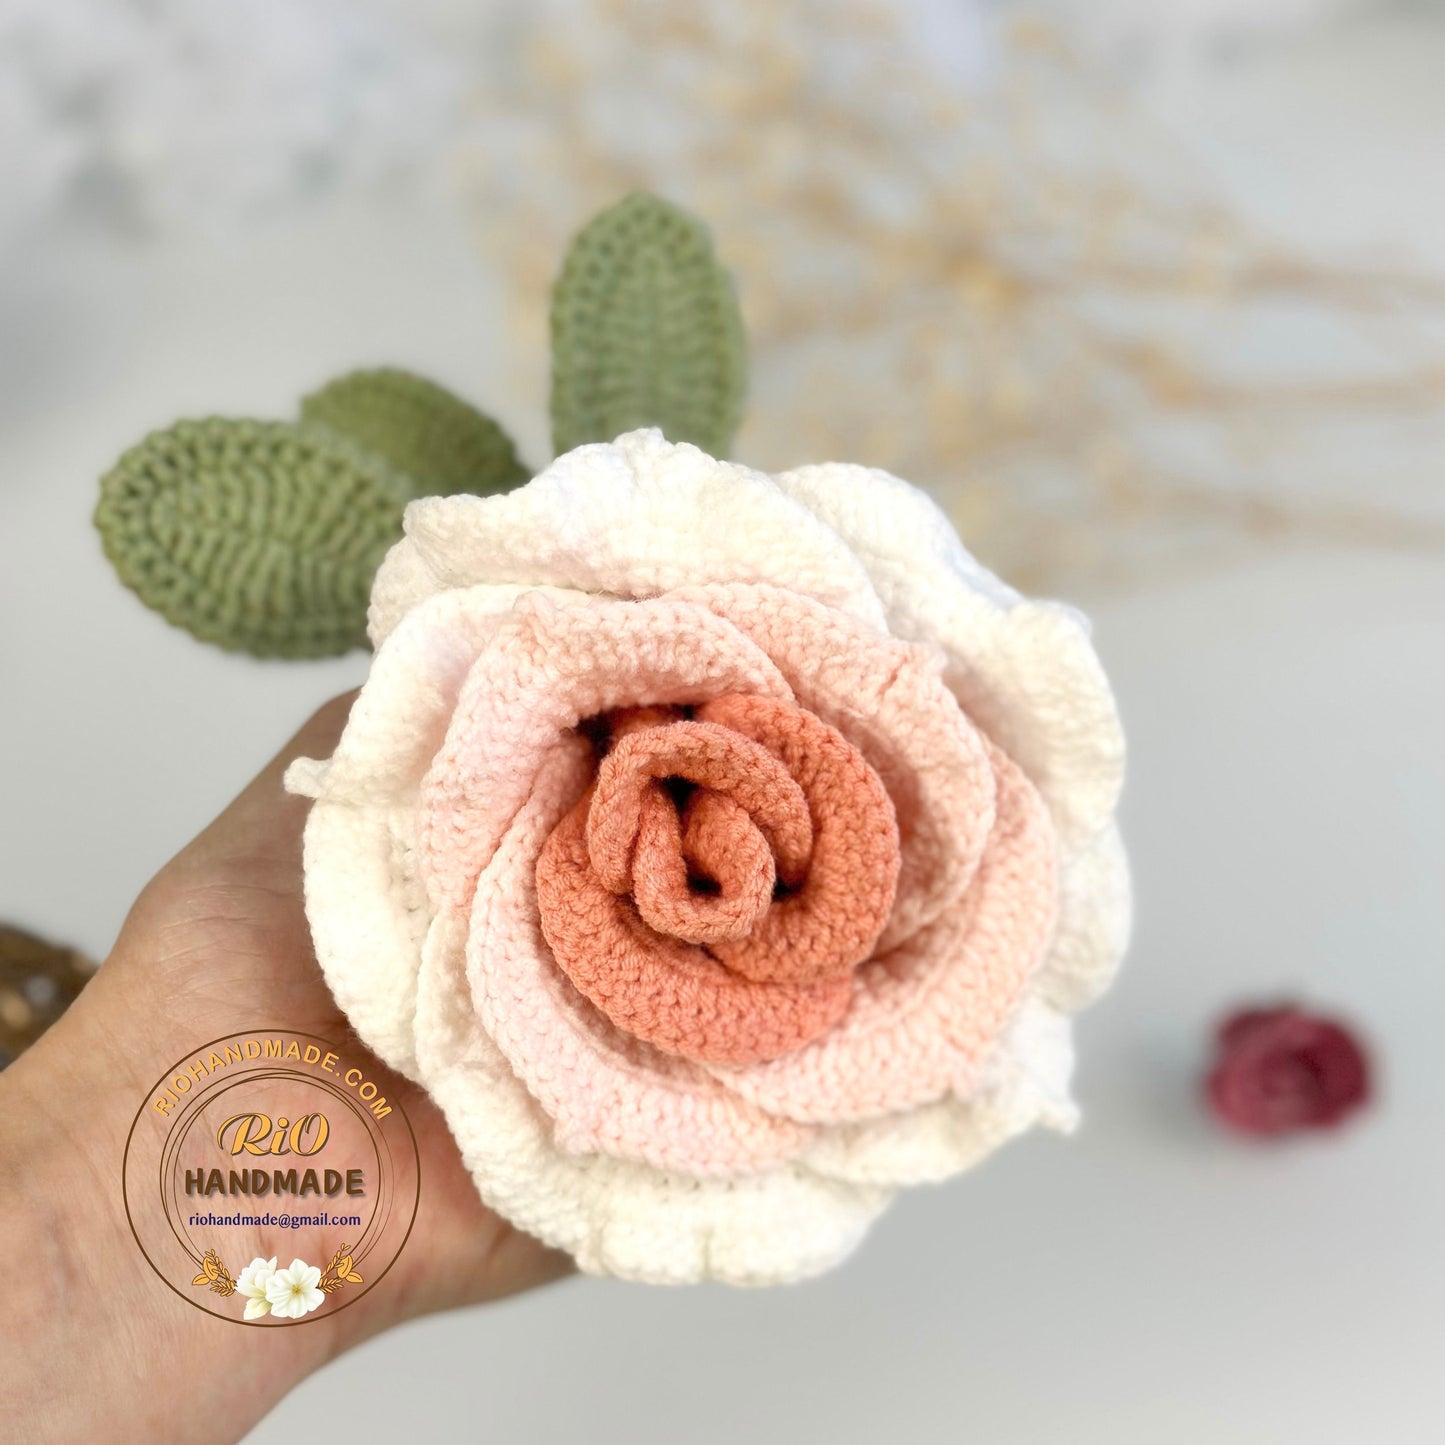 1pc Crochet Rose, Ready To Ship, Rio Handmade Crochet Rose Flower, Gift For Her, Gift For Mom